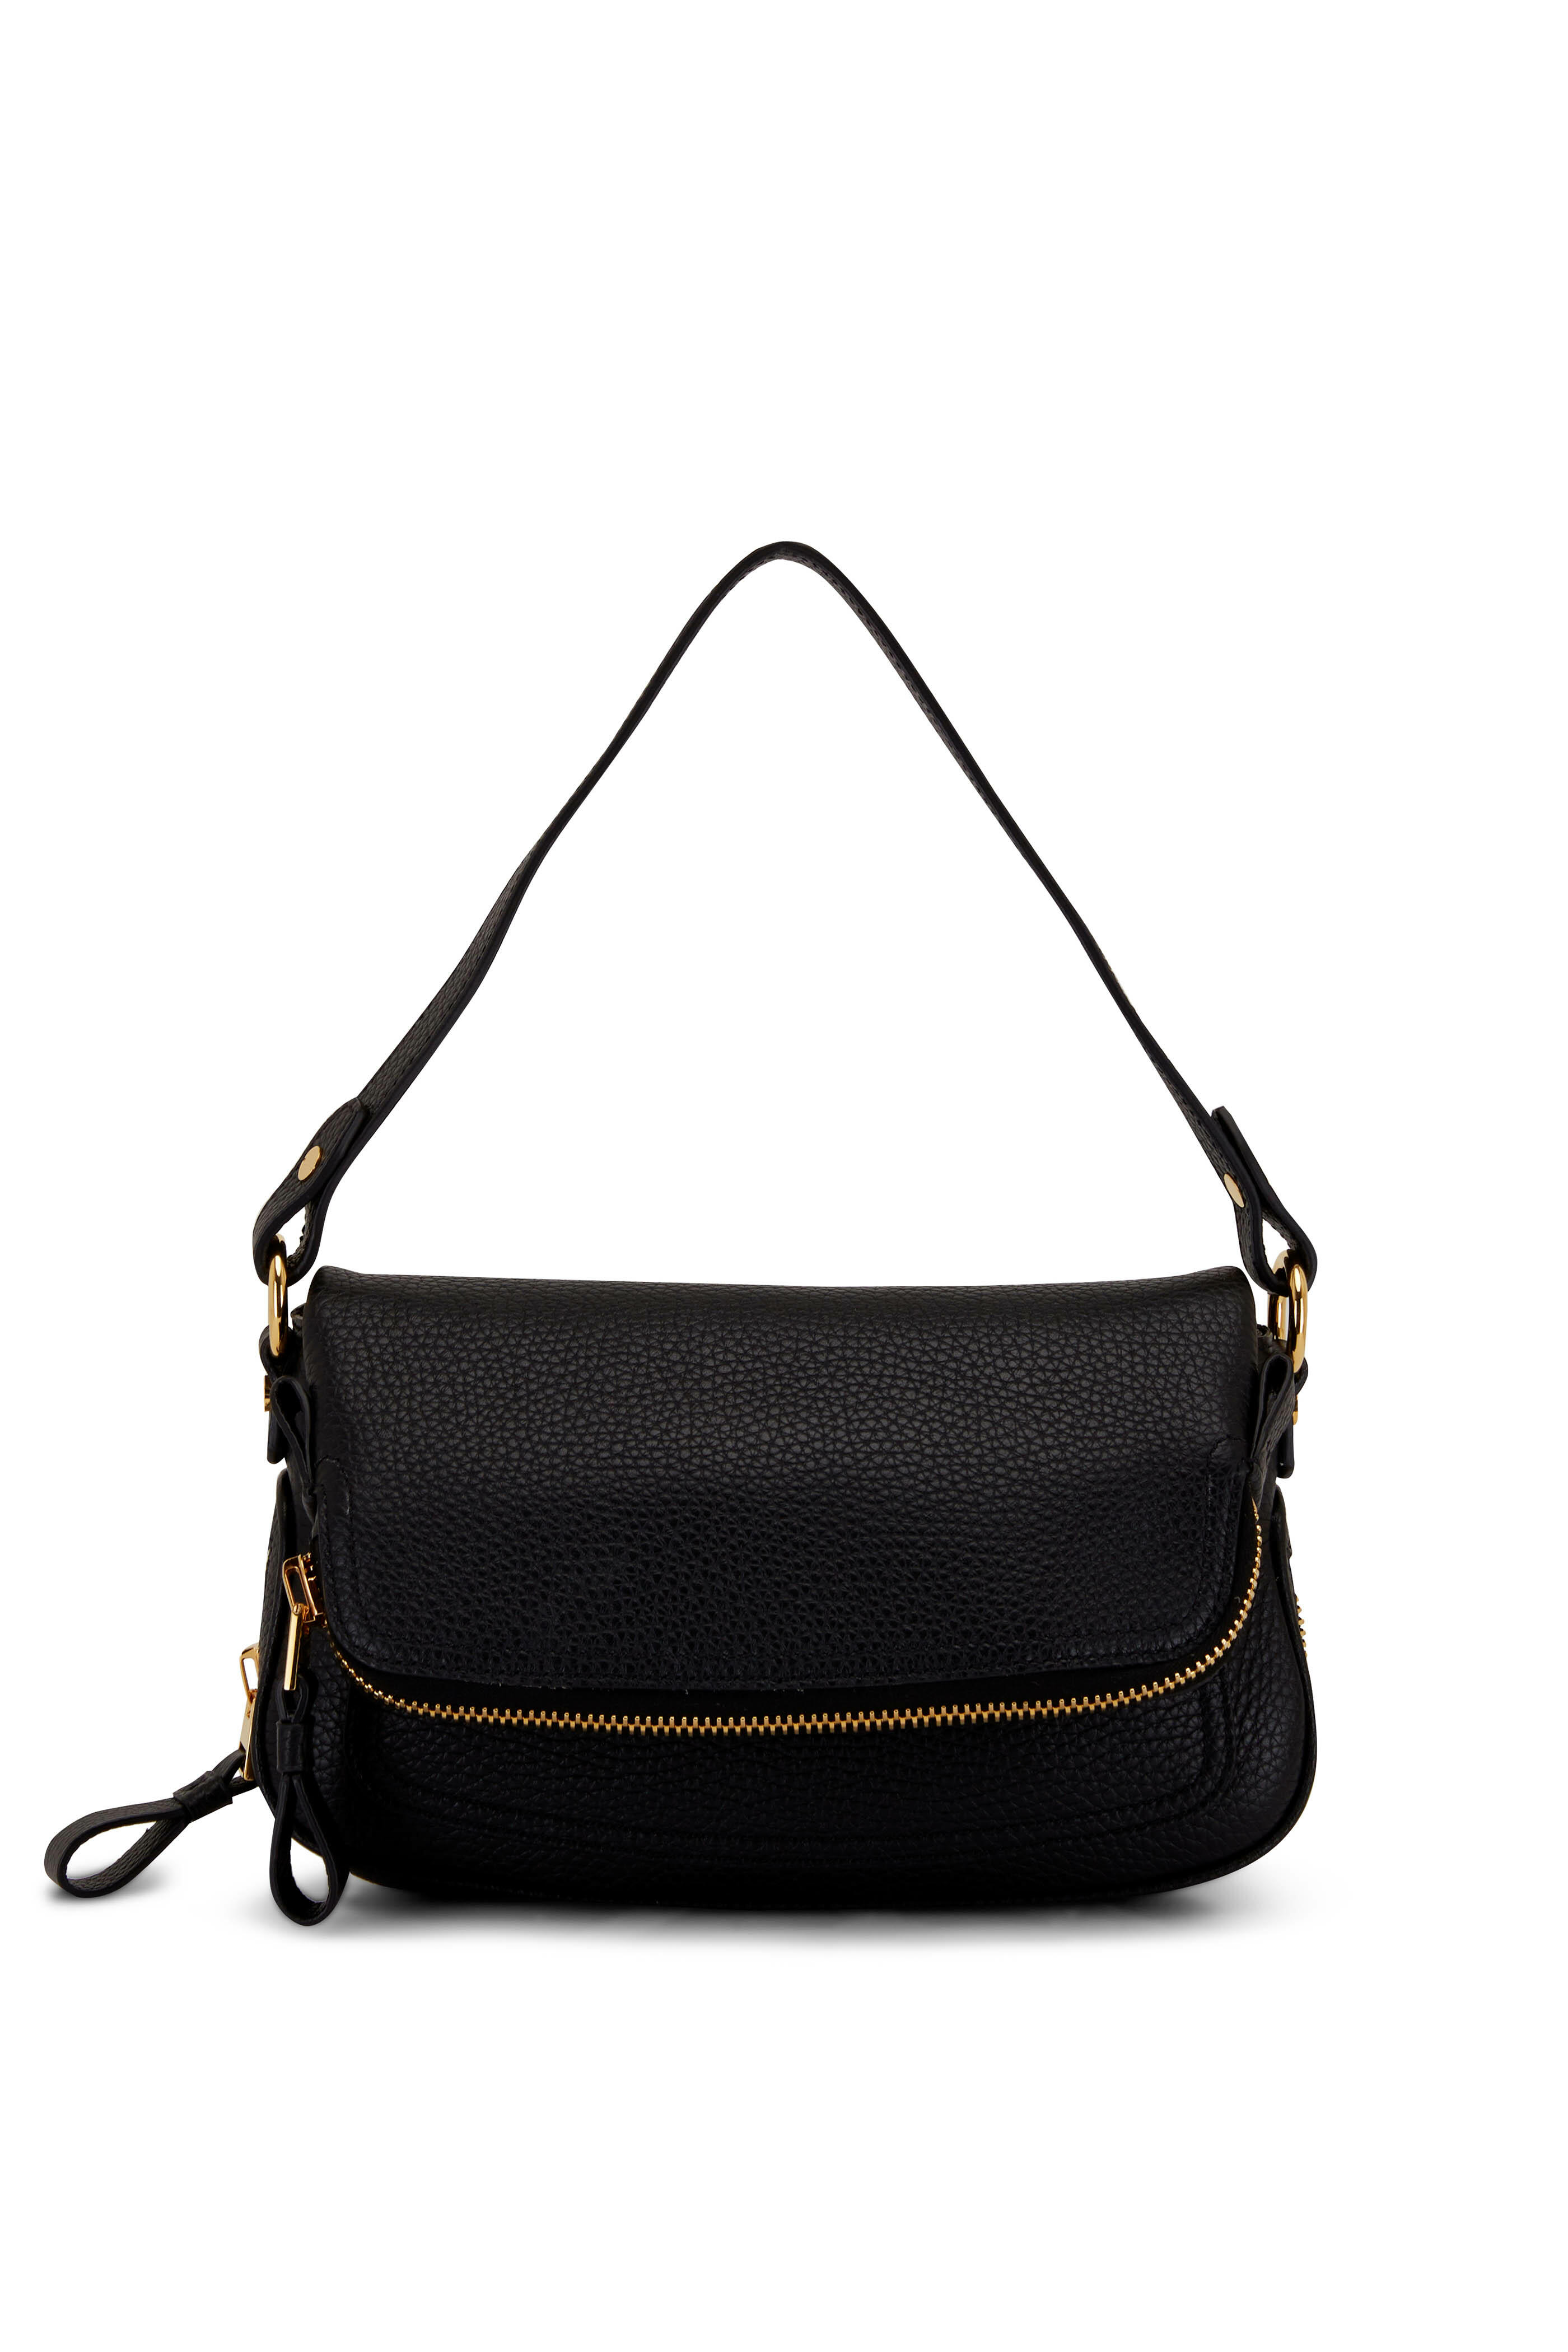 Tom Ford - Jennifer Black Grain Leather Mini Shoulder Bag